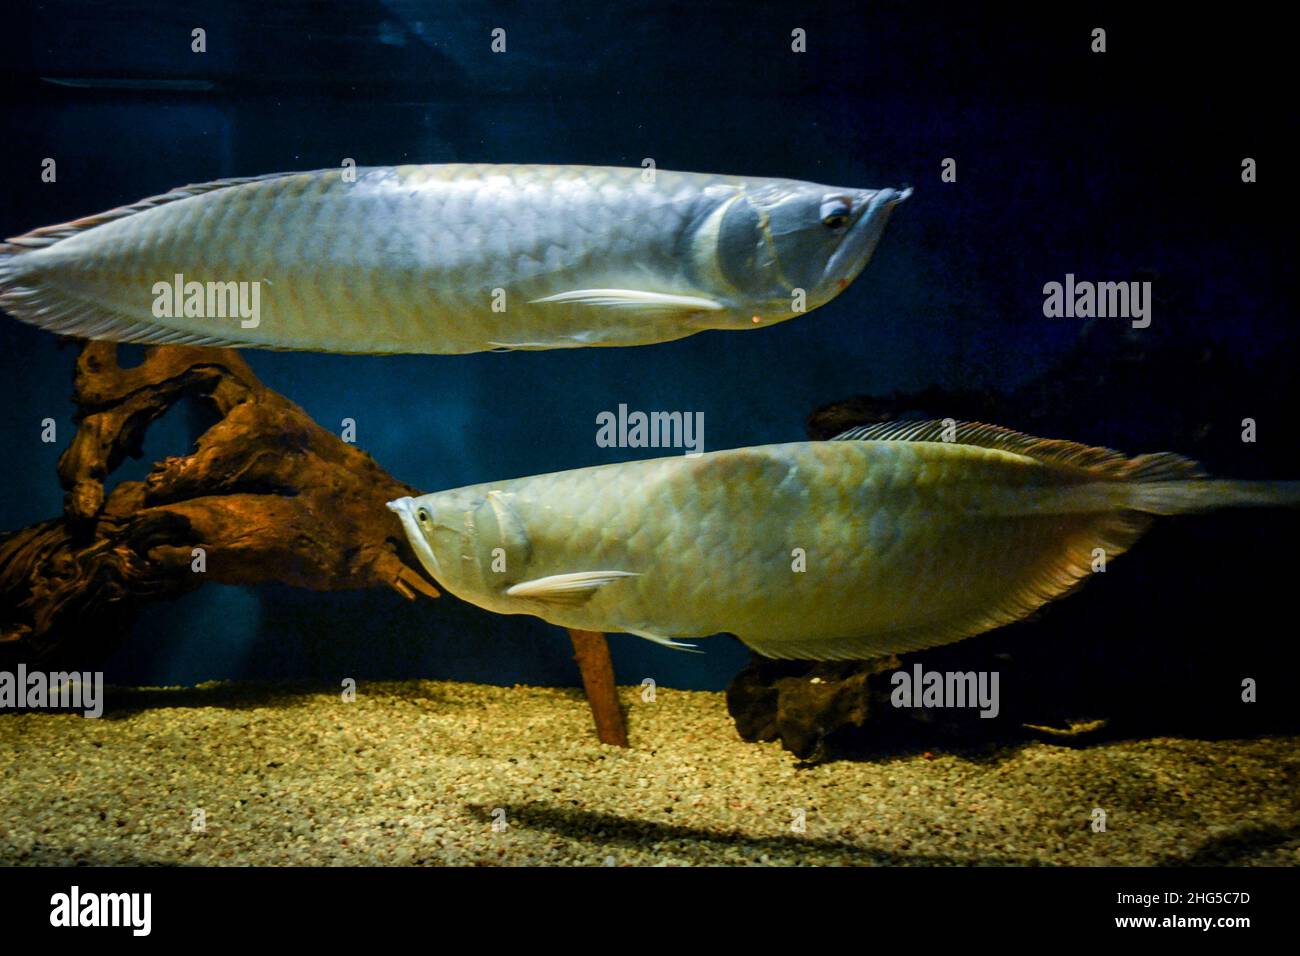 Two arowana fish swimming in aquarium Stock Photo